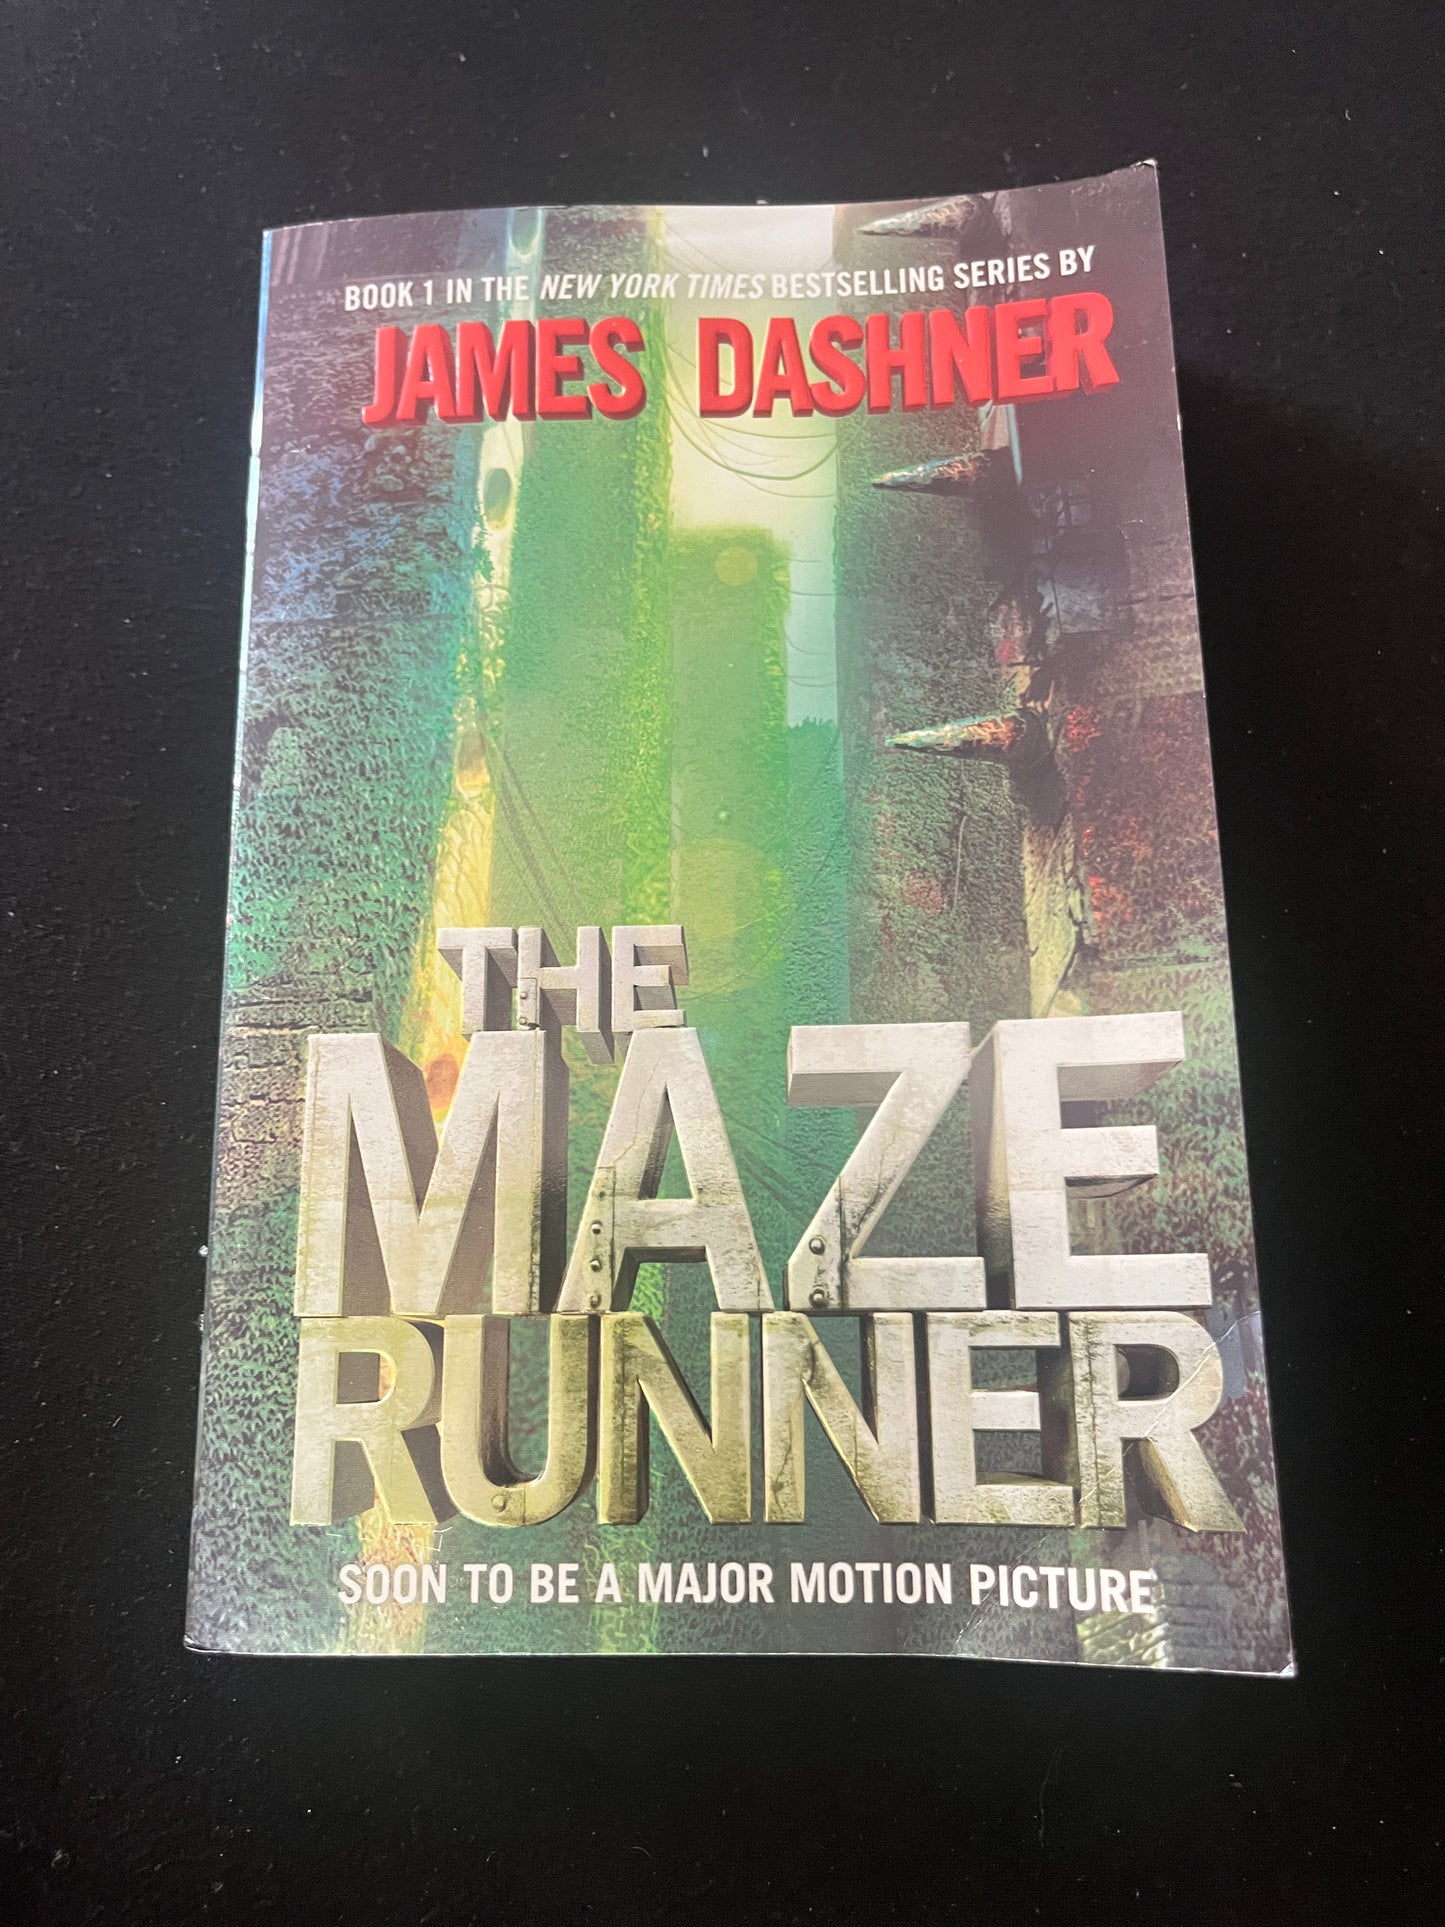 THE MAZE RUNNER by James Dashner